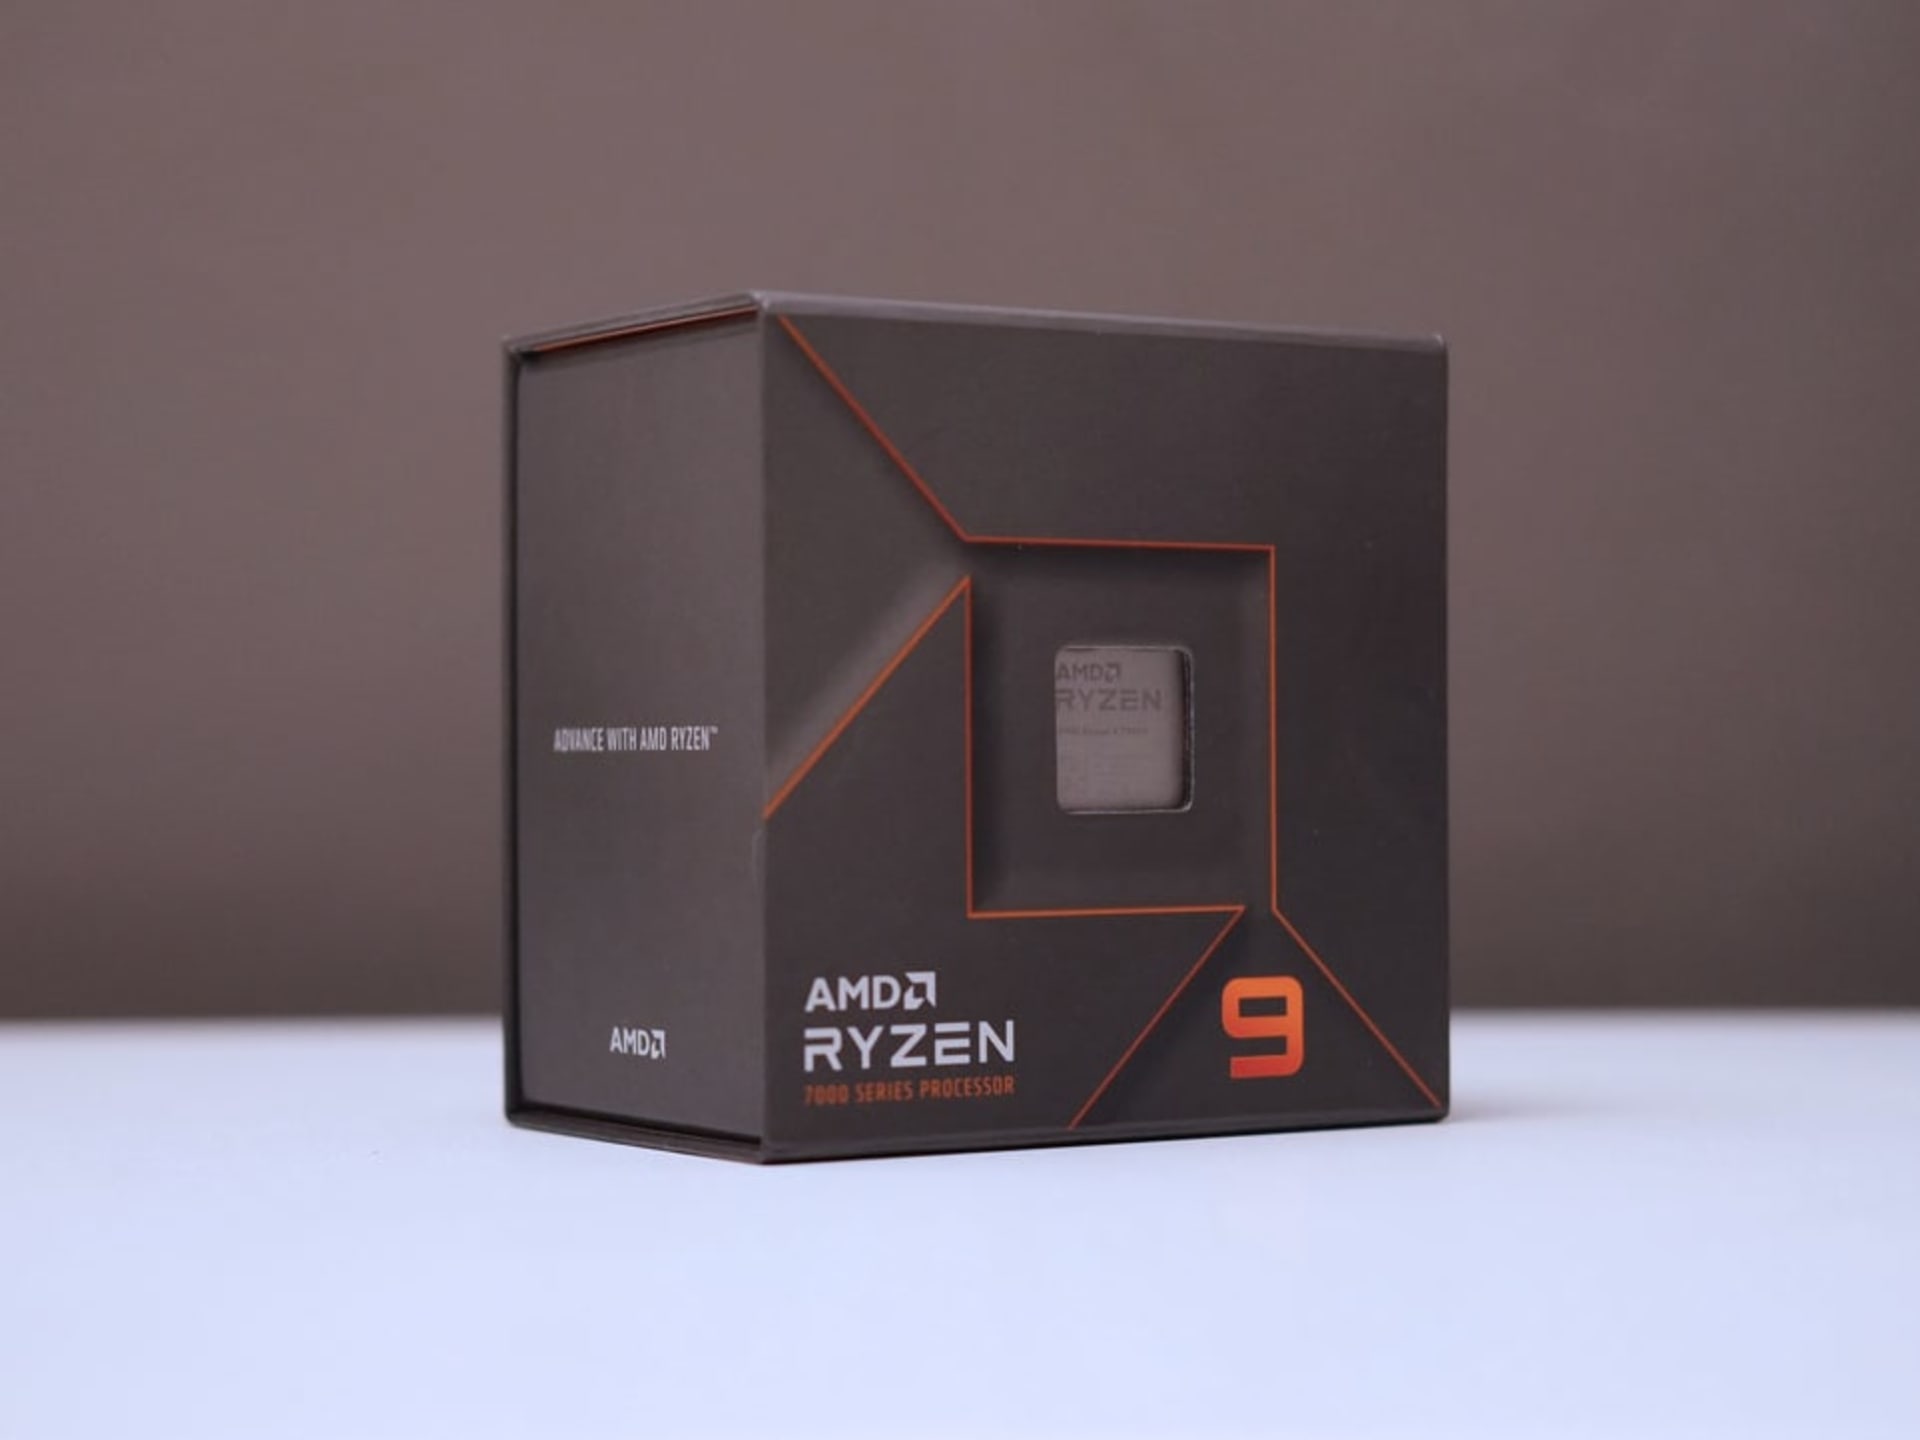 AMD Ryzen 9 7900X CPU